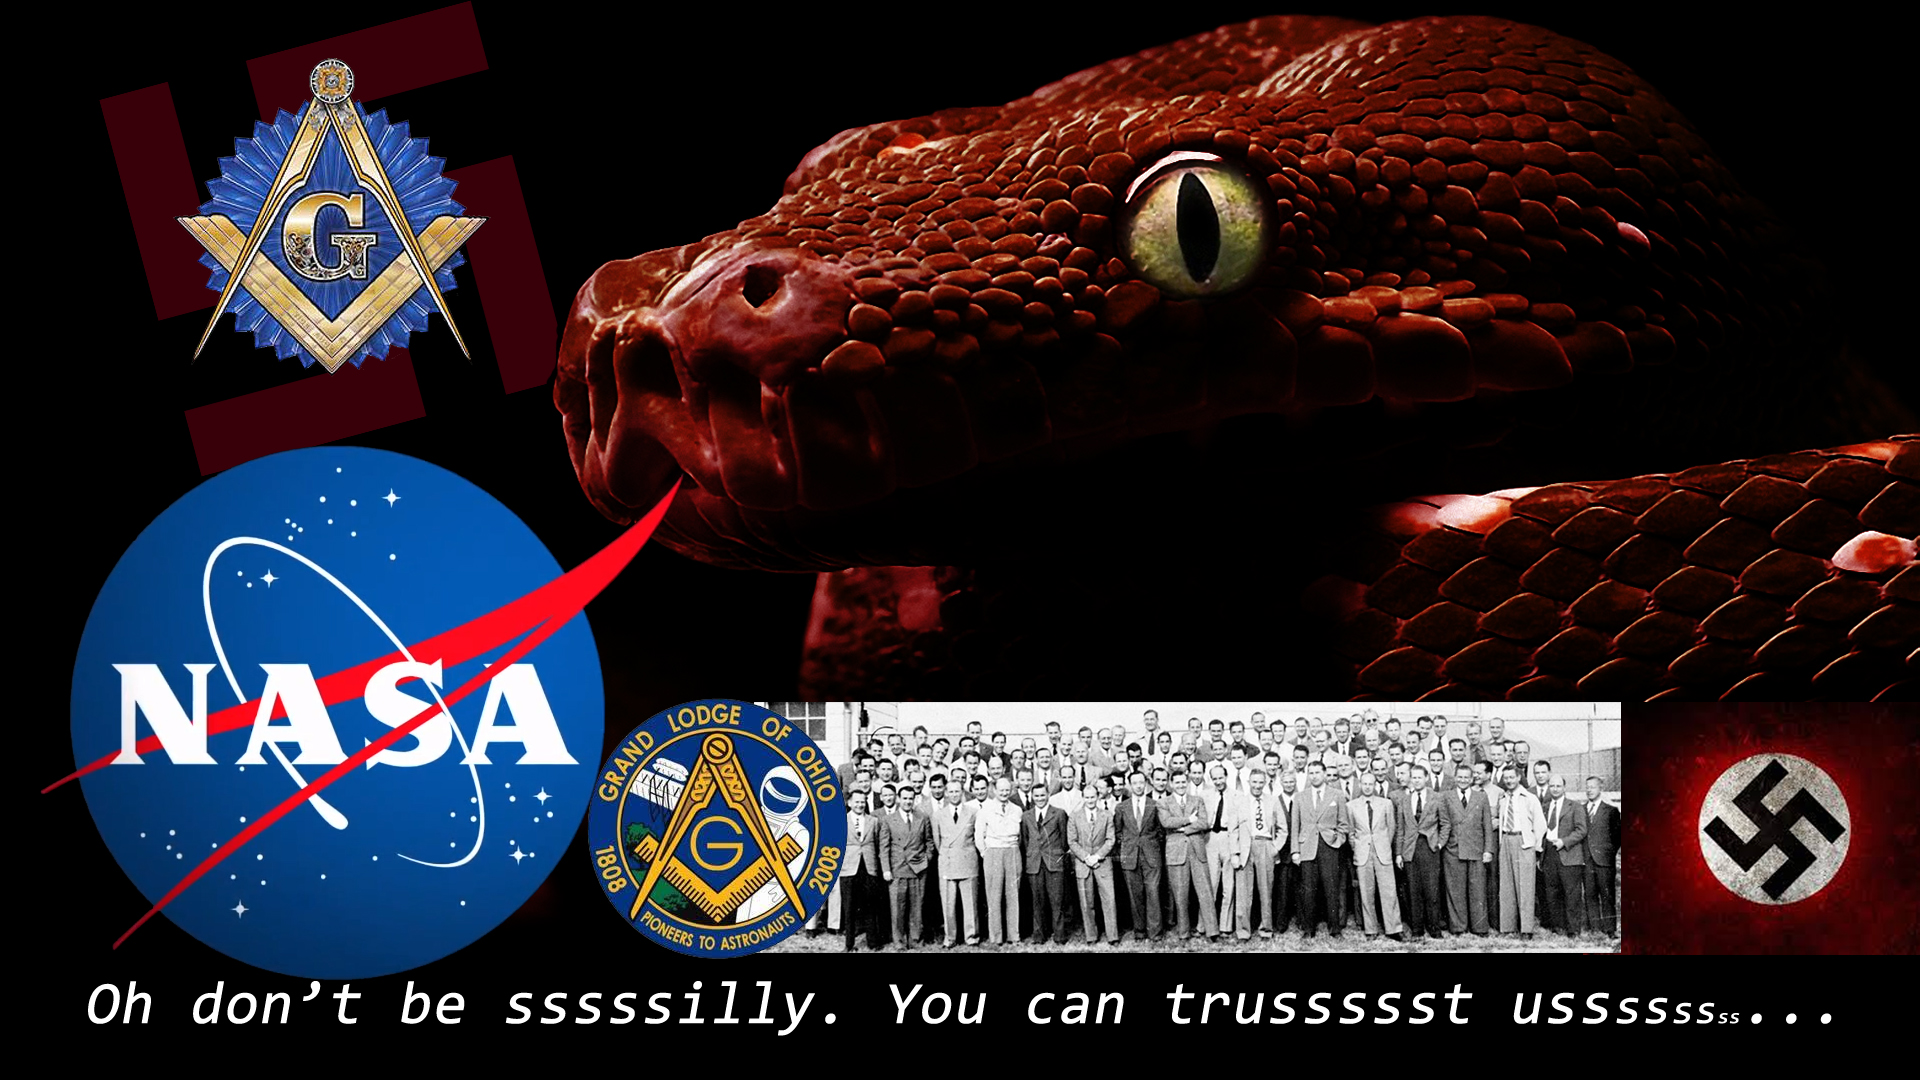 Trust NASA?